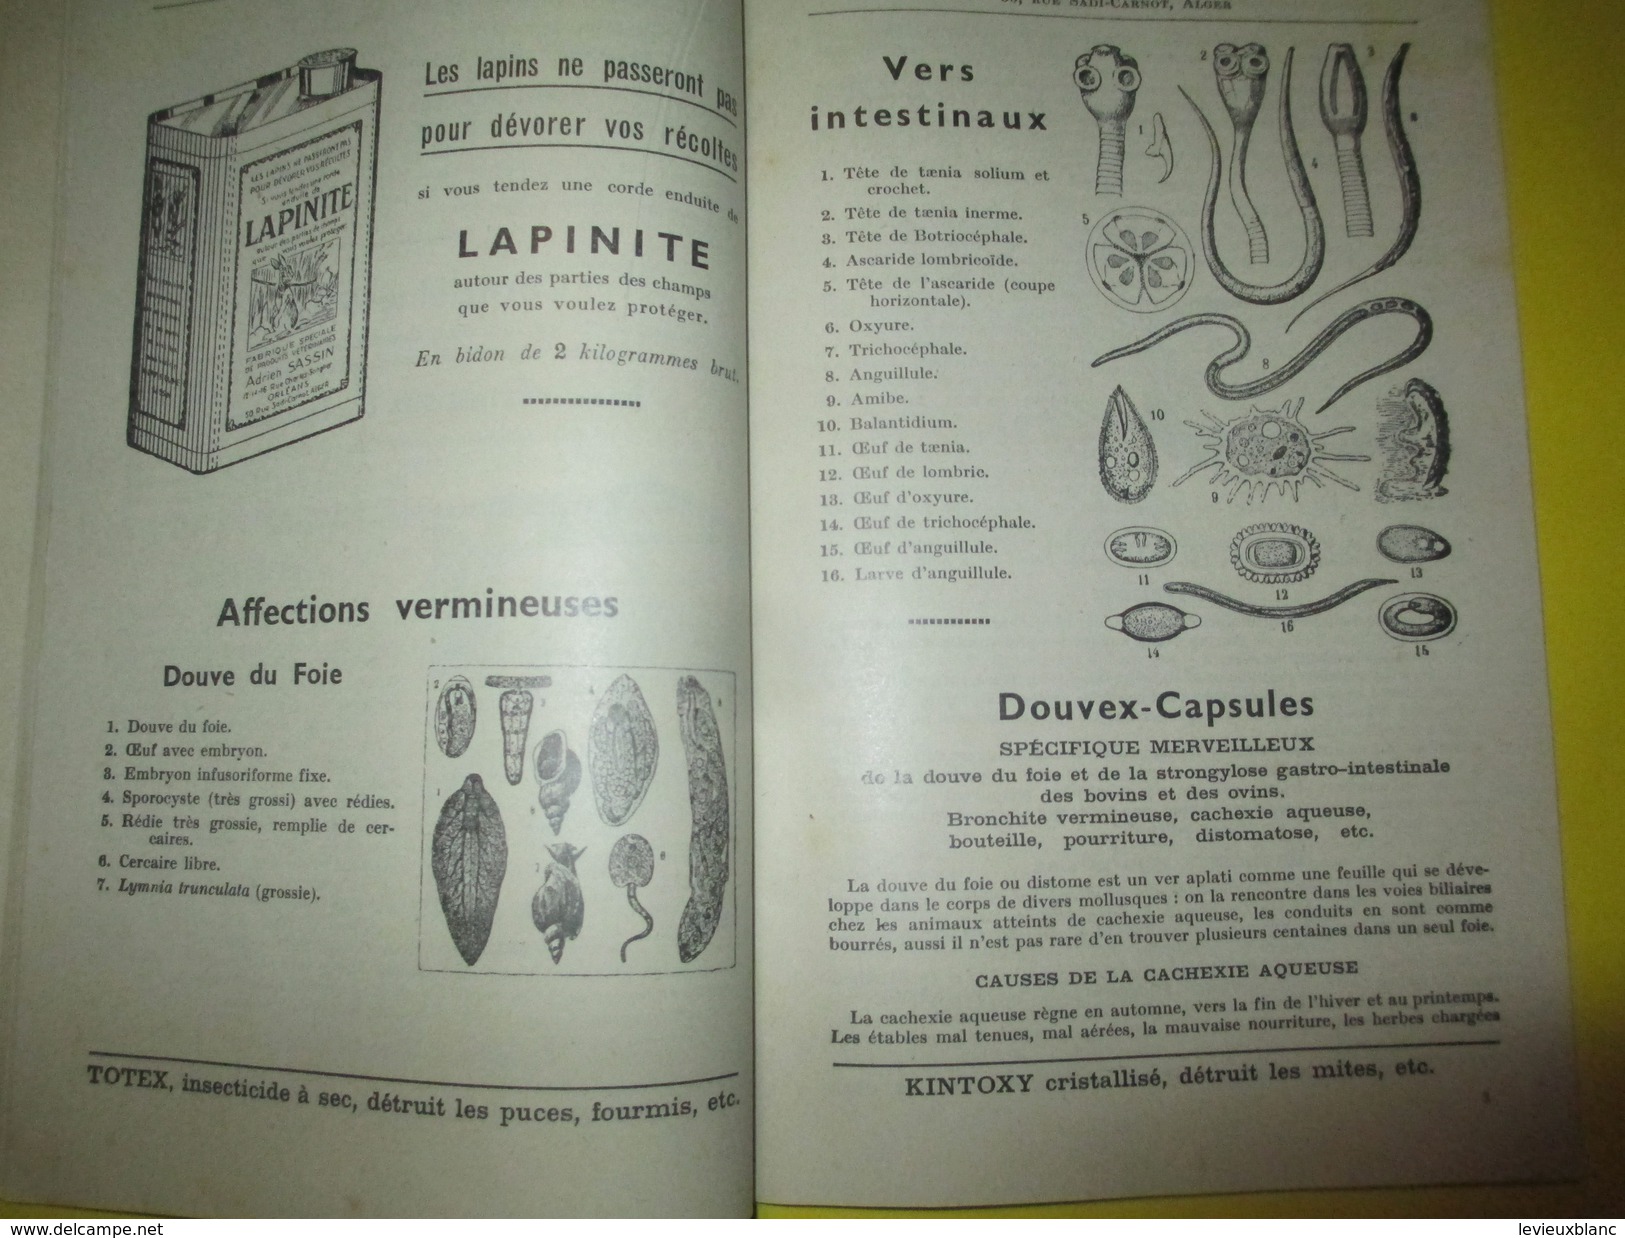 Elevage/Catalogue / Fabrique Spéciale De Produits Vétérinaires/Adrien Sassin/ ORLEANS / ALGER/ 1955          CAT158 - Landbouw